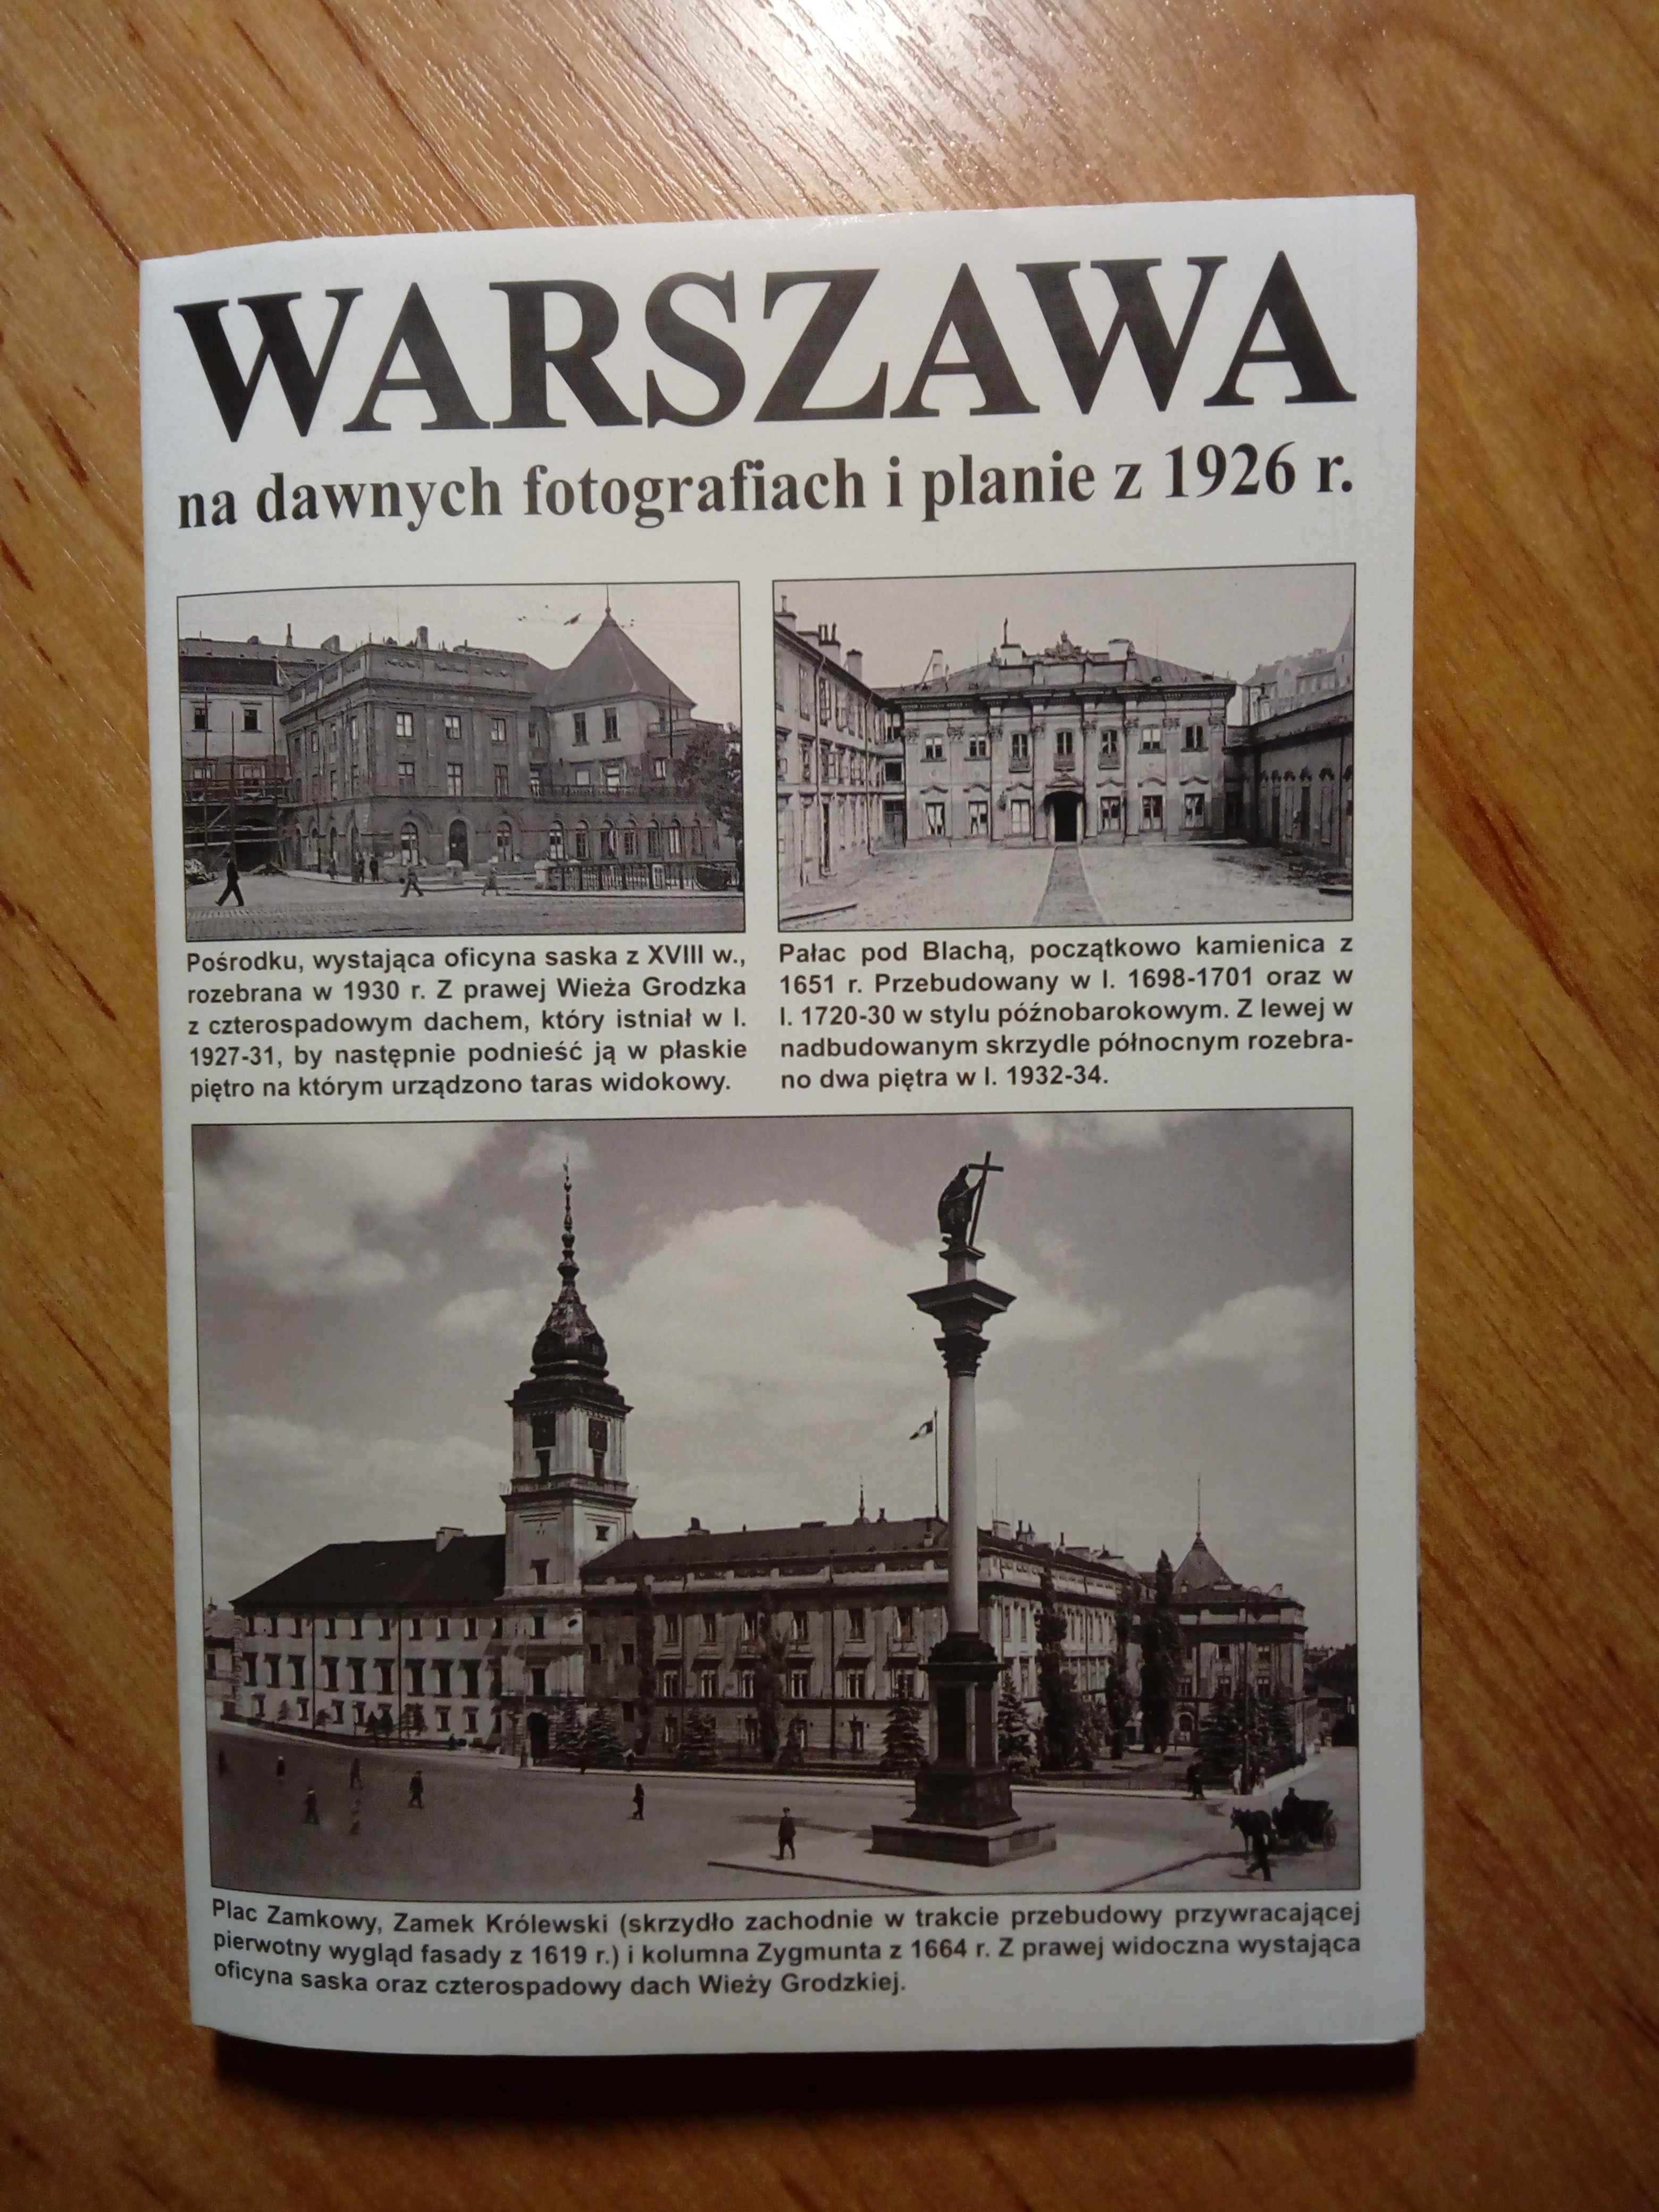 Warszawa na dawnych fotografiach i planie z 1926 r. (J.Krawczyk)